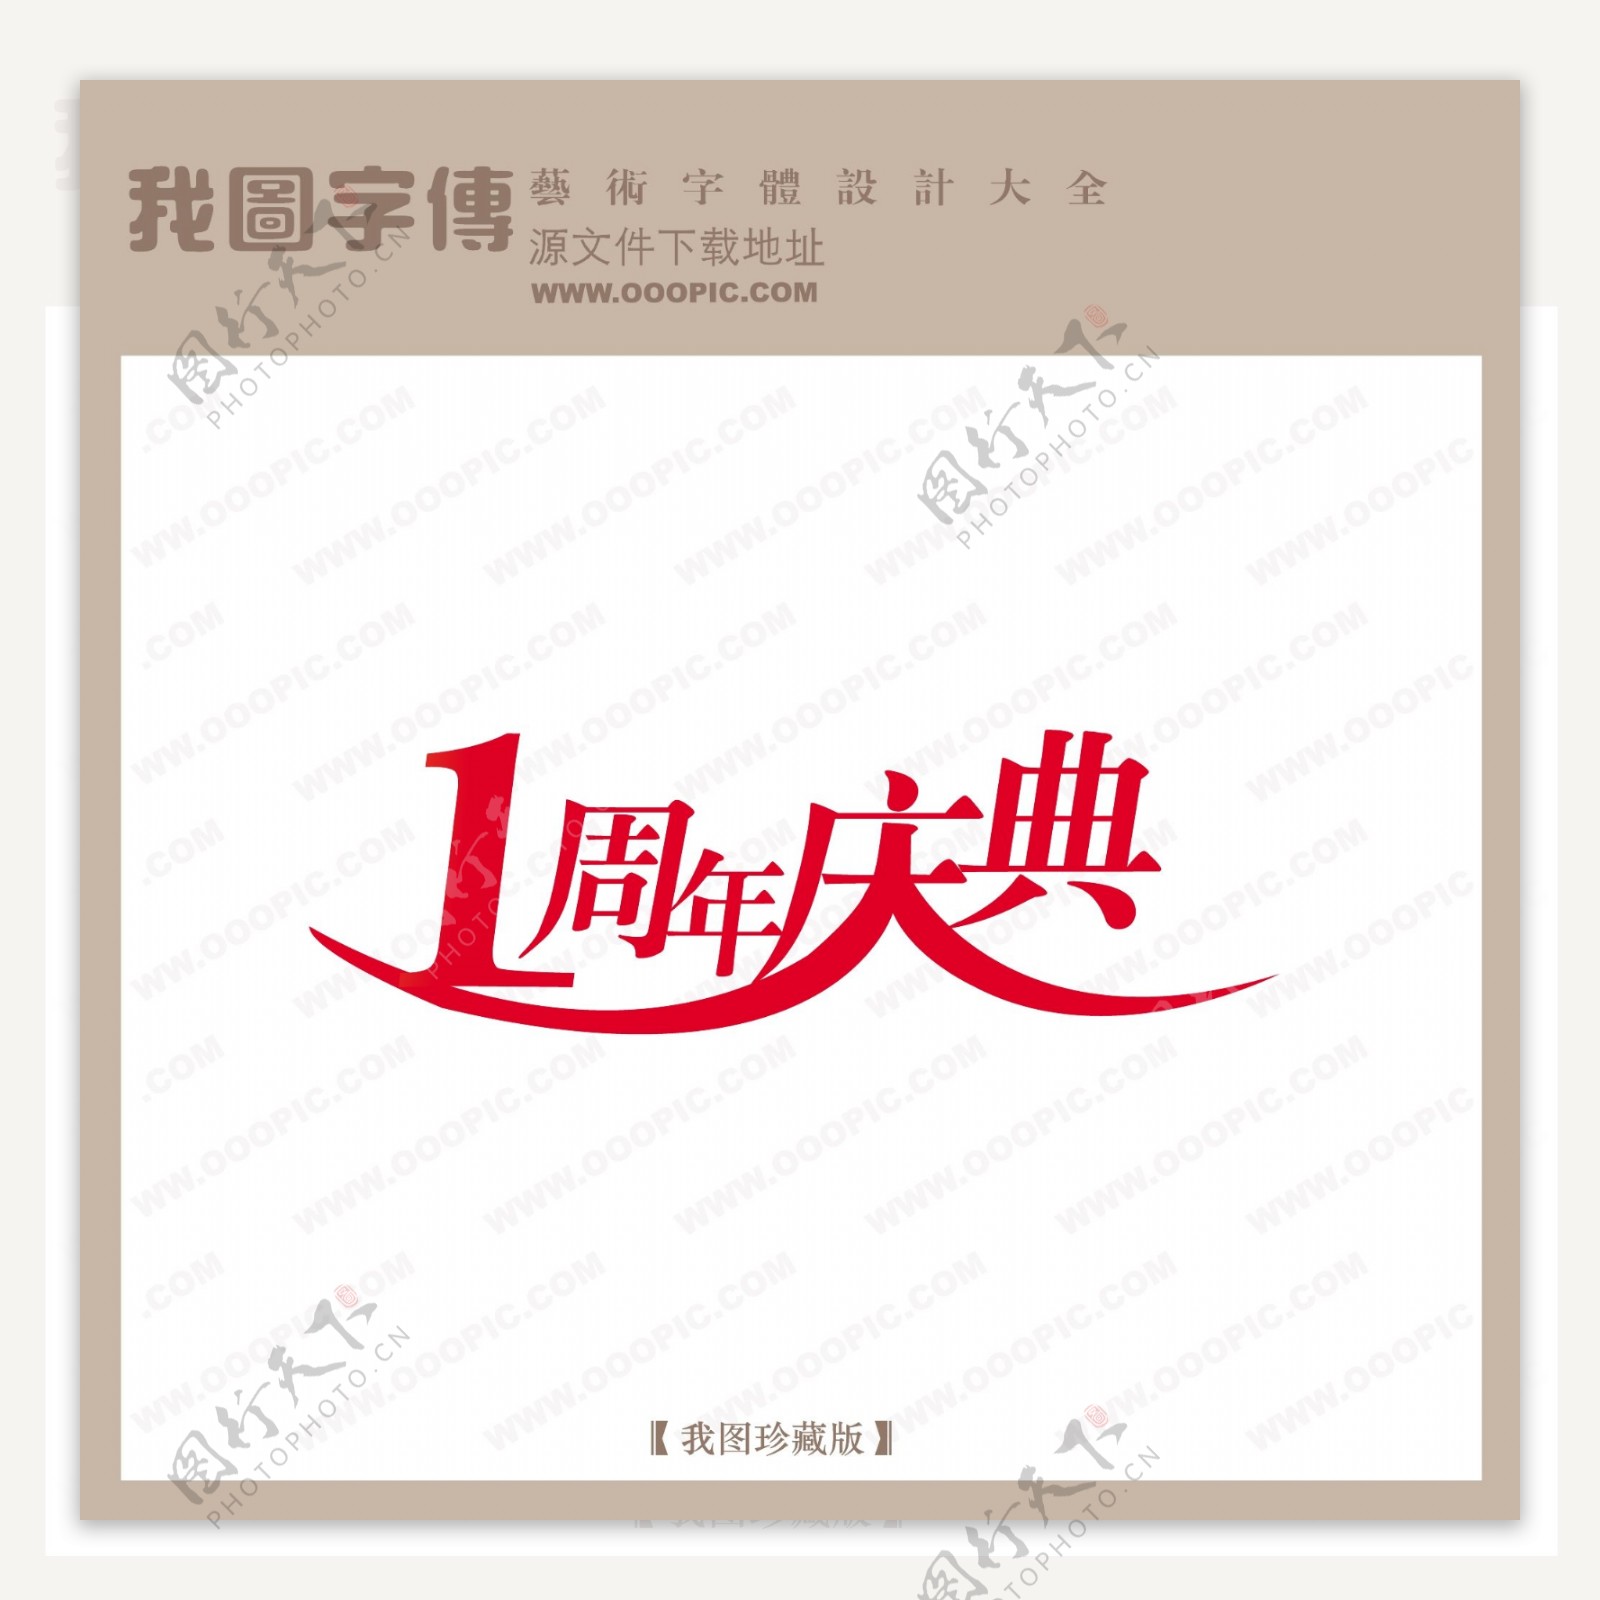 1周年庆典商场艺术字中文现代艺术字中国字体设计